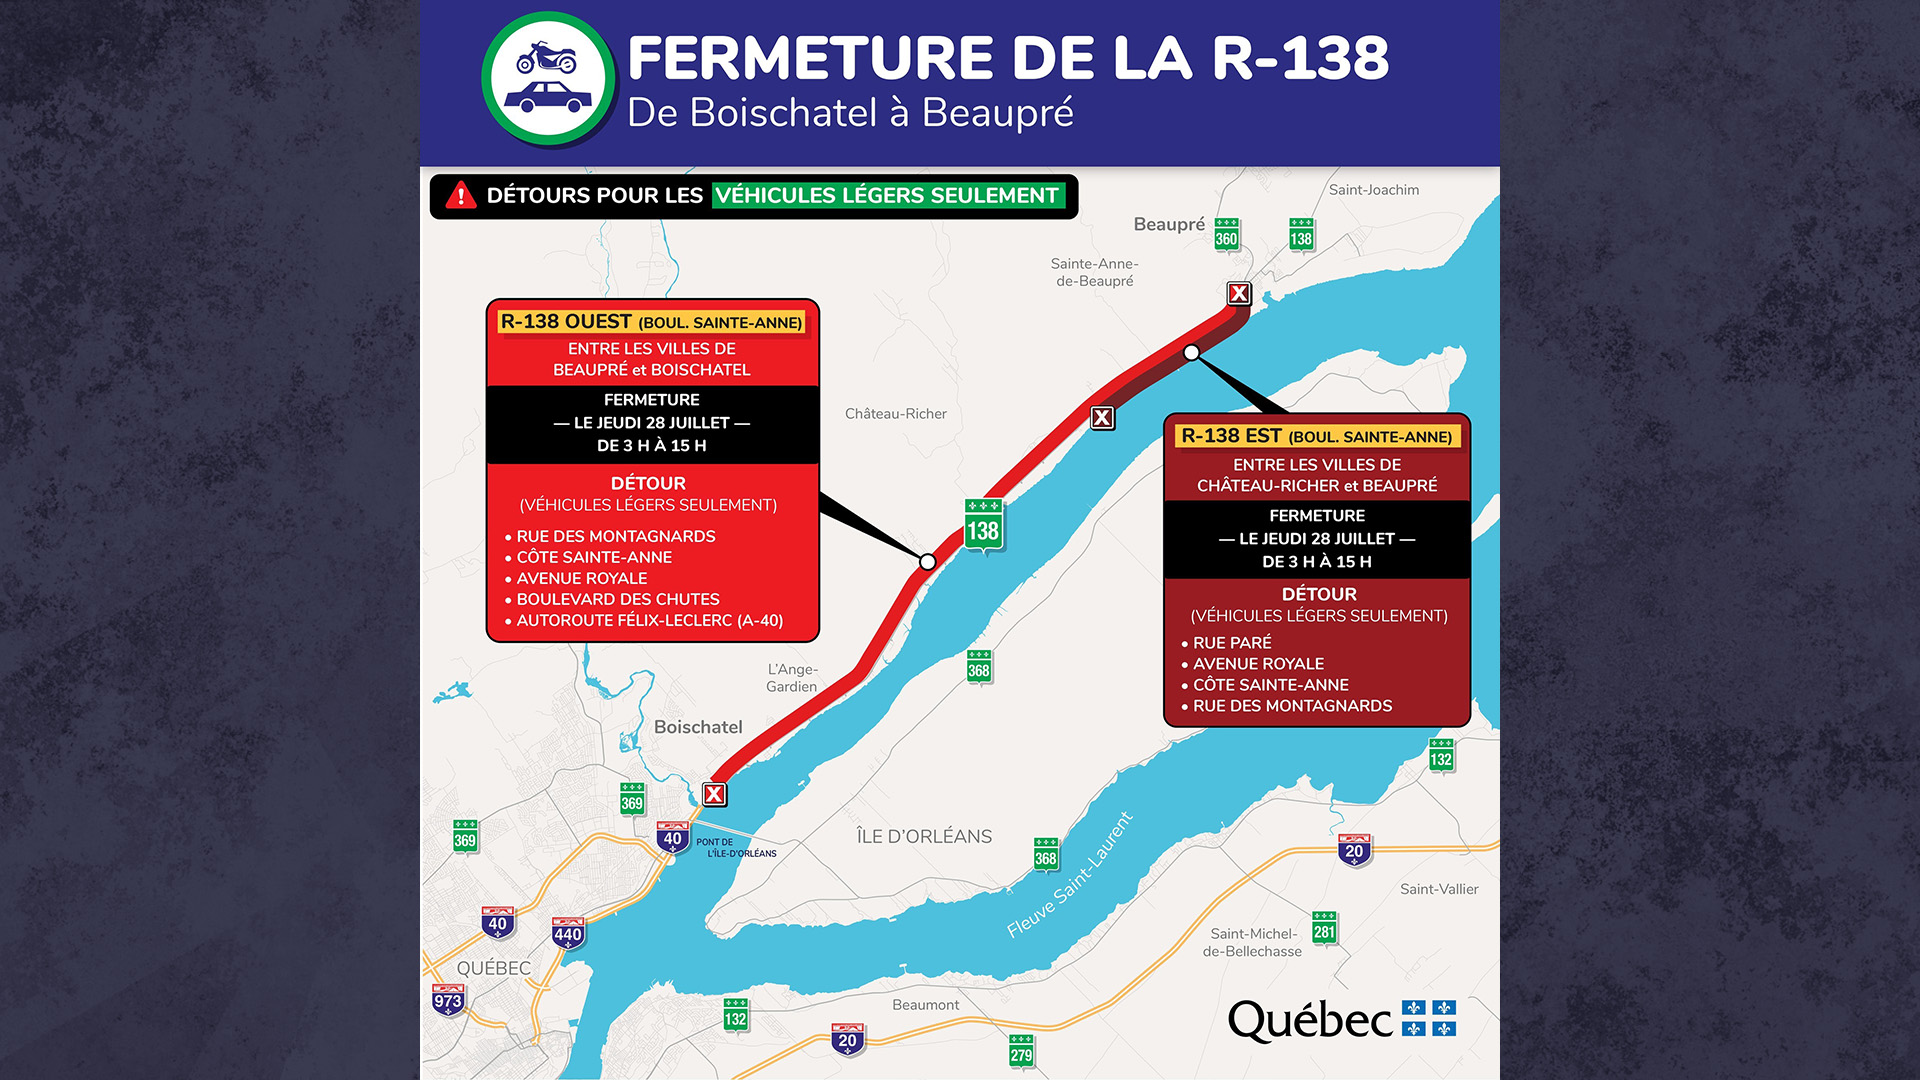 Fermeture de la R-138 de Boischatel à Beaupré le 28 juillet.